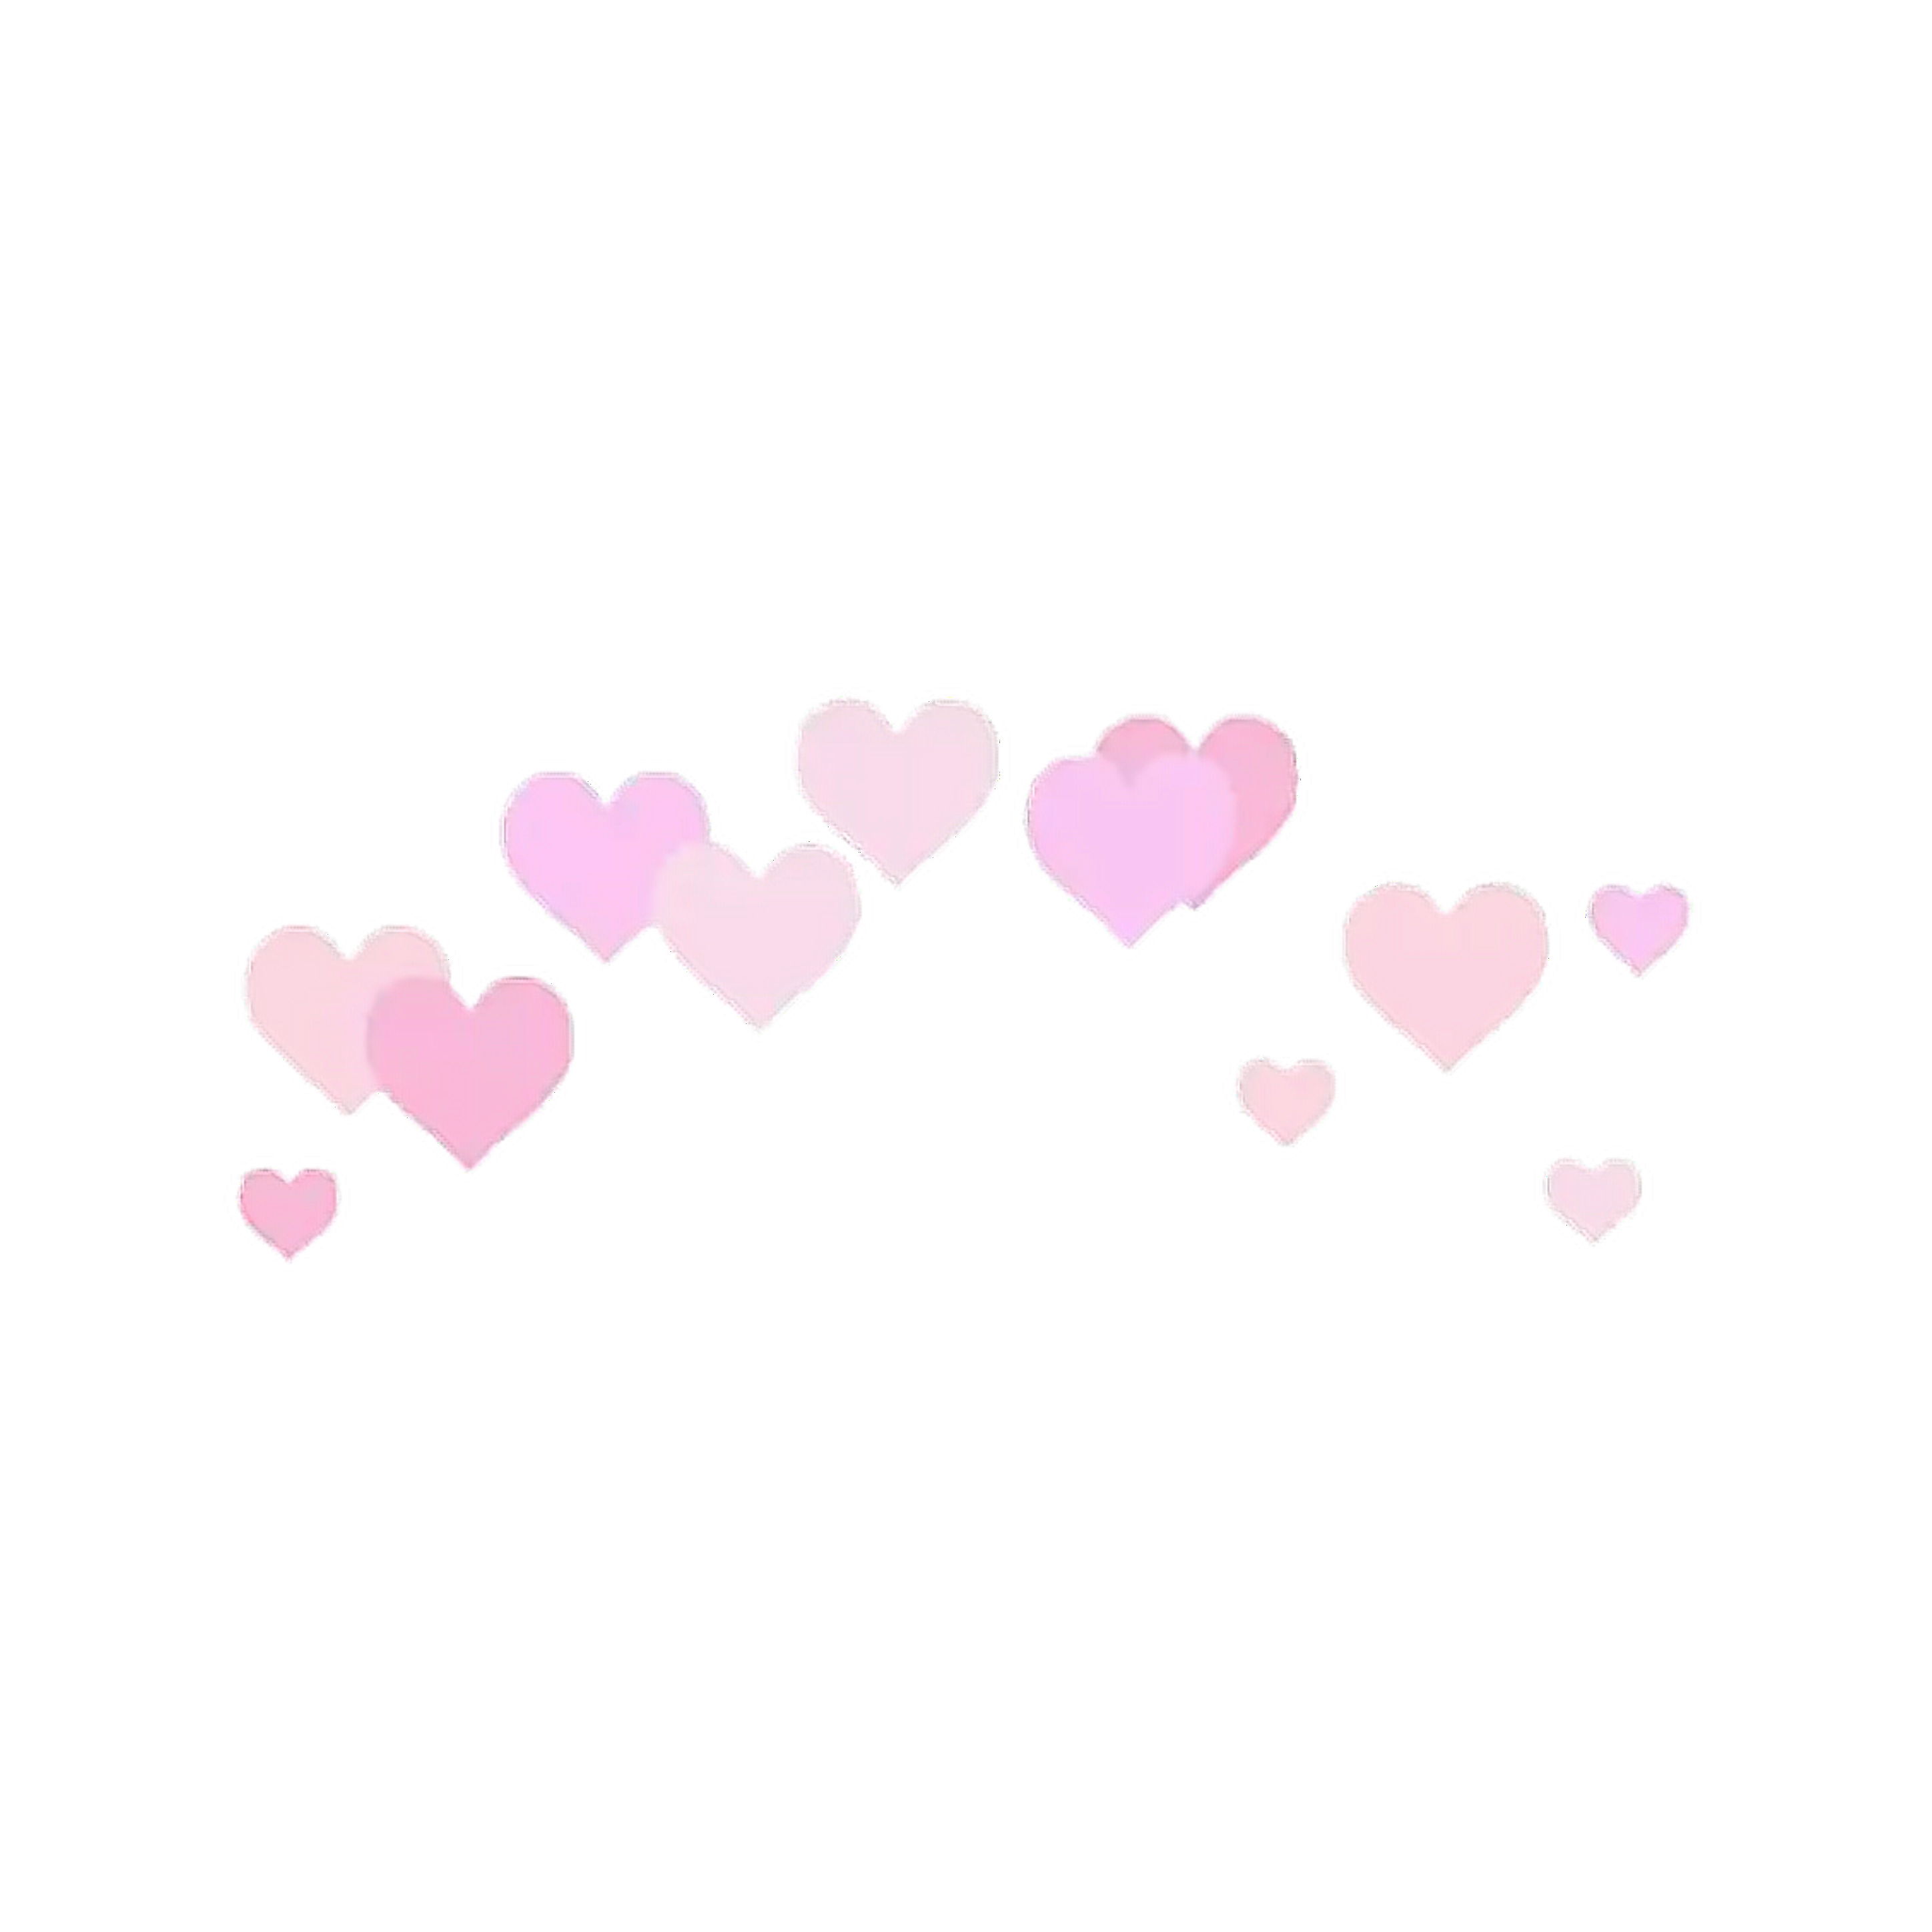 corona hearts pink sweet freetoedit sticker by @sweetlolita_